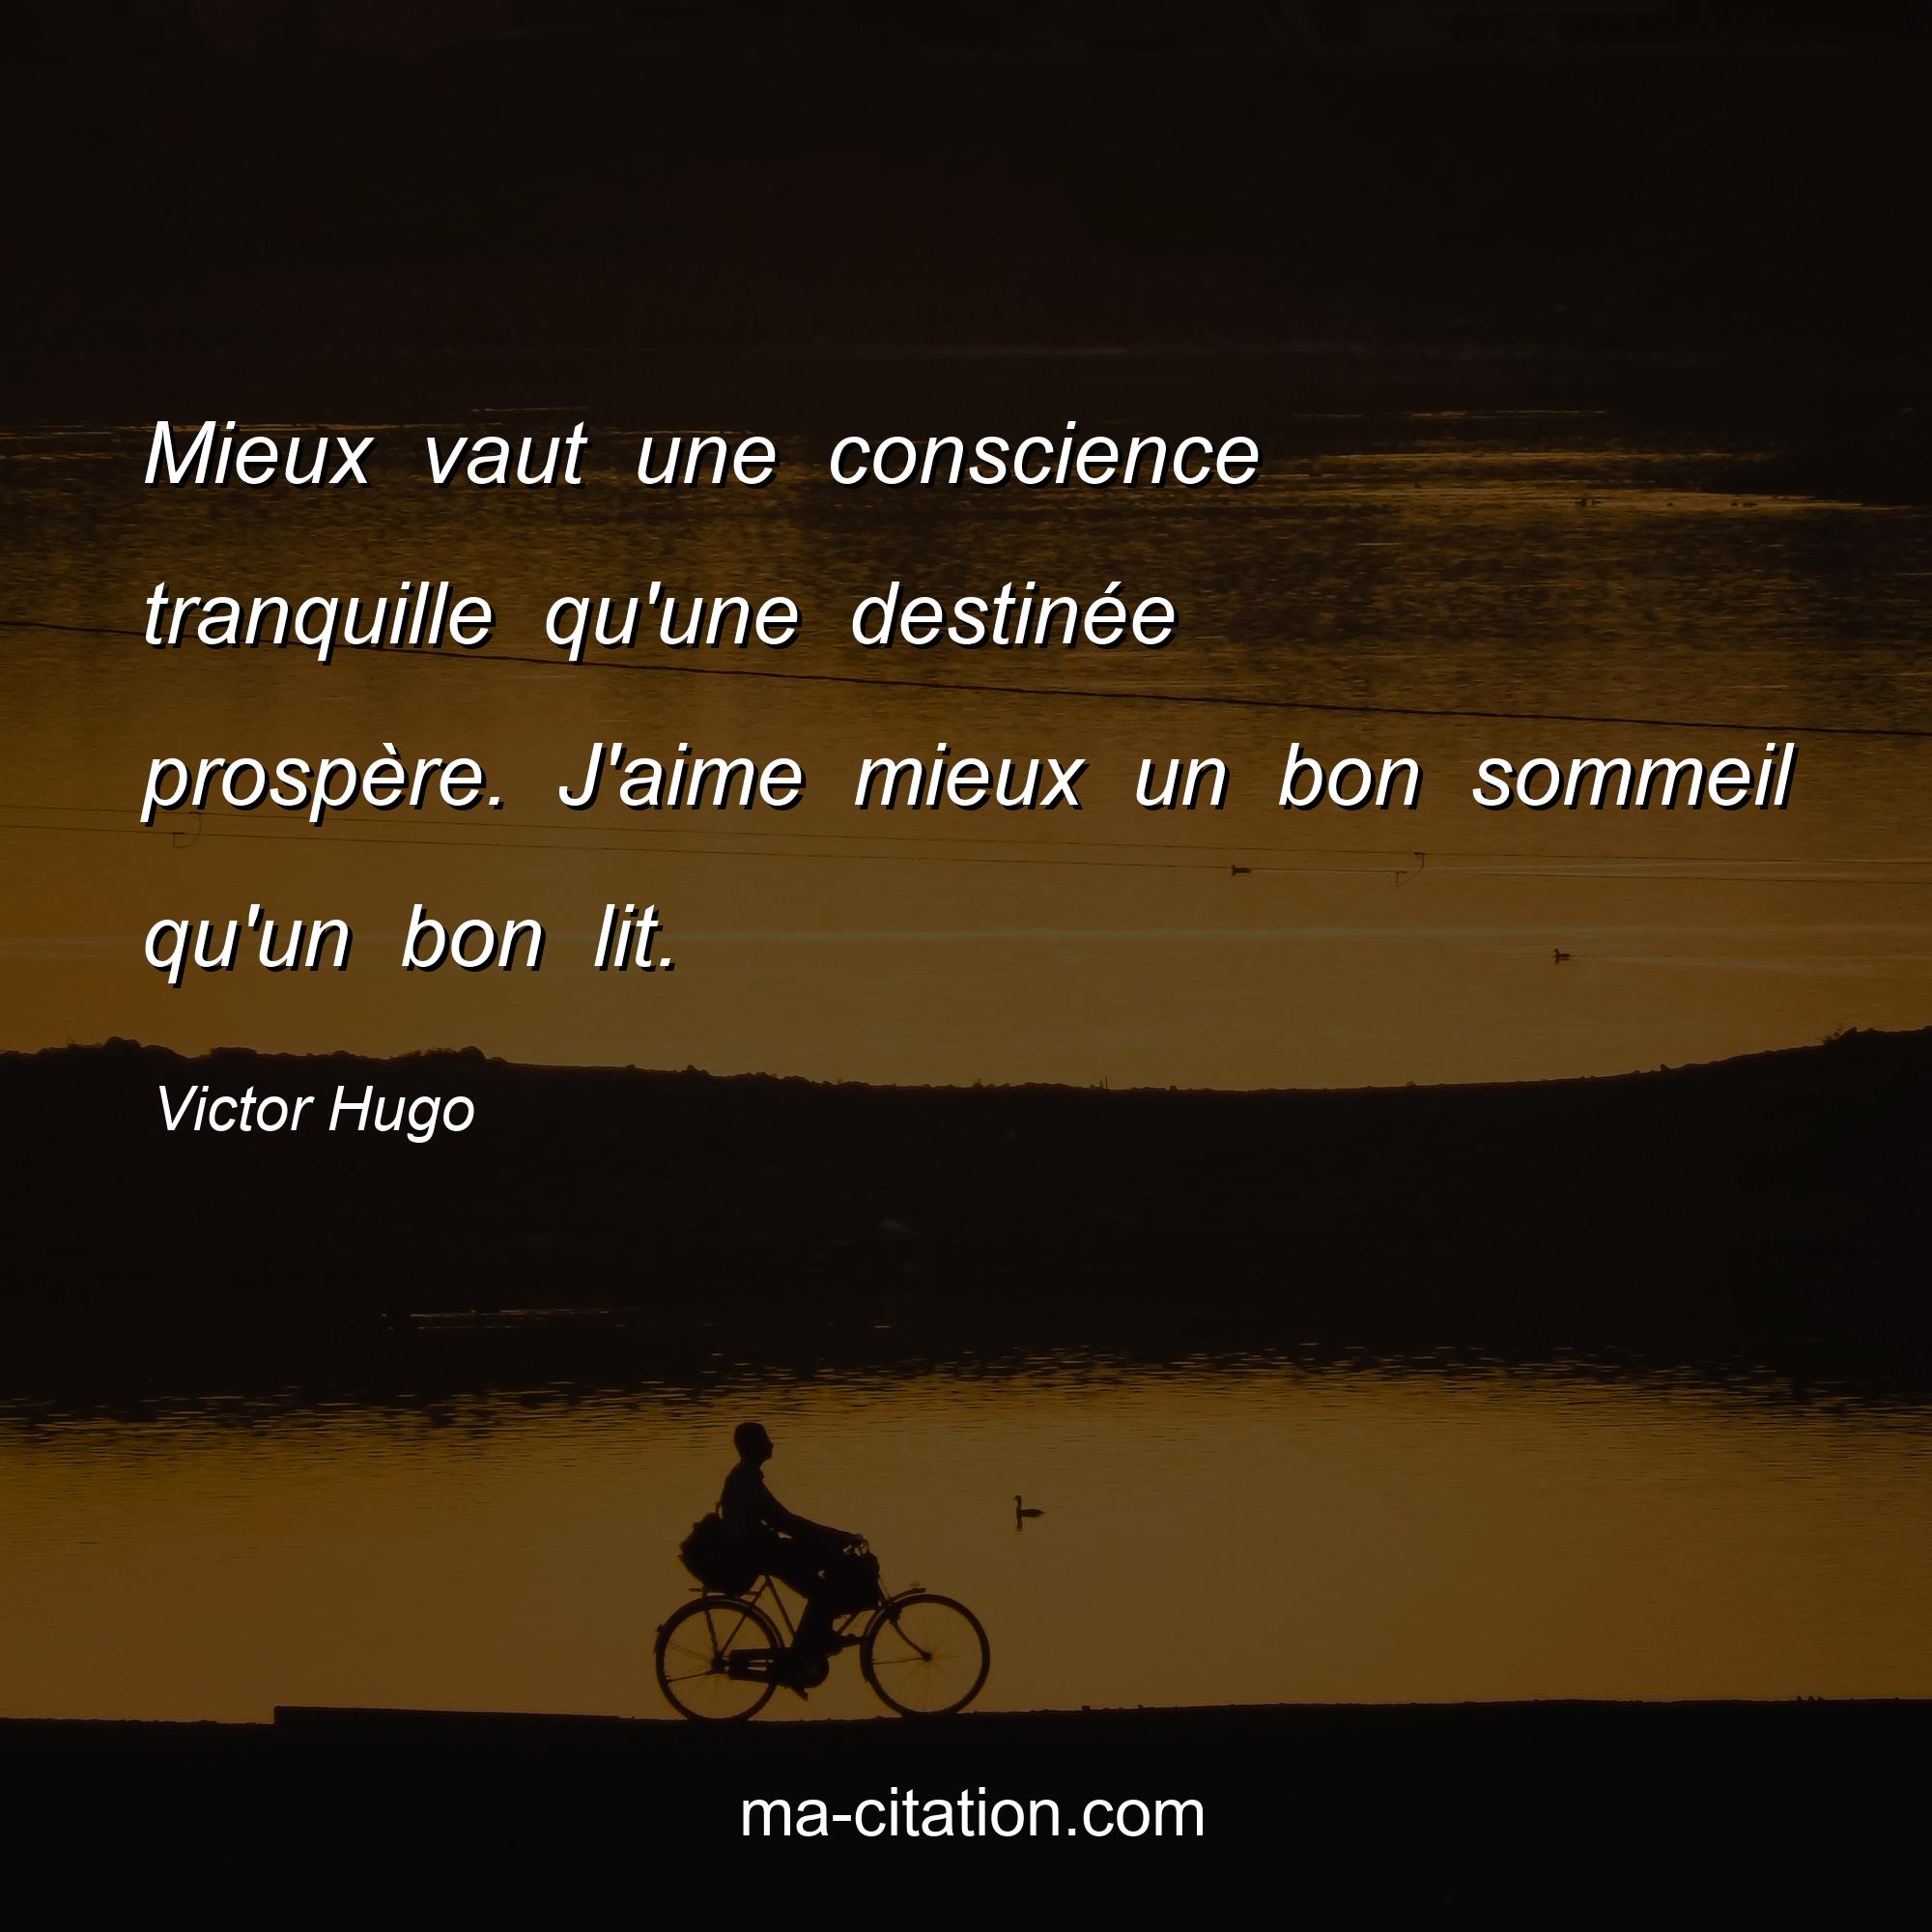 Victor Hugo : Mieux vaut une conscience tranquille qu'une destinée prospère. J'aime mieux un bon sommeil qu'un bon lit.